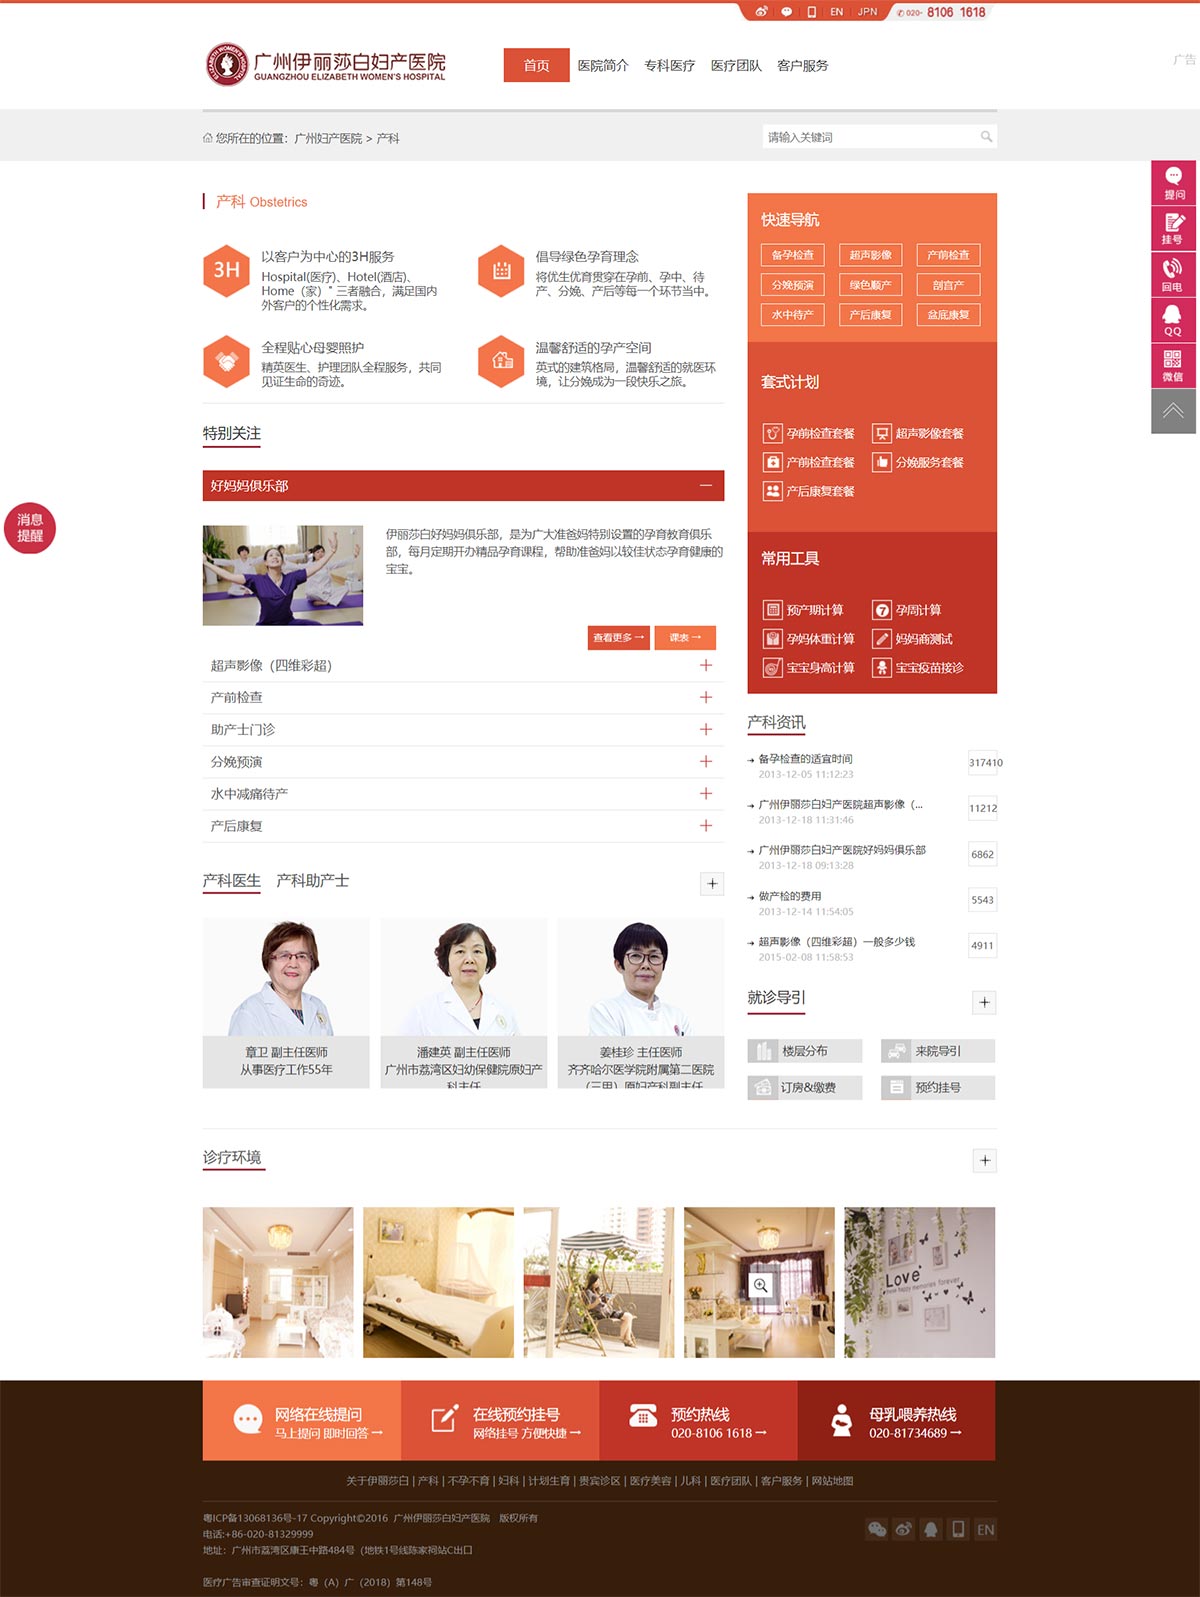 广州伊丽莎白妇产医院-(中国)官方网站-2.jpg